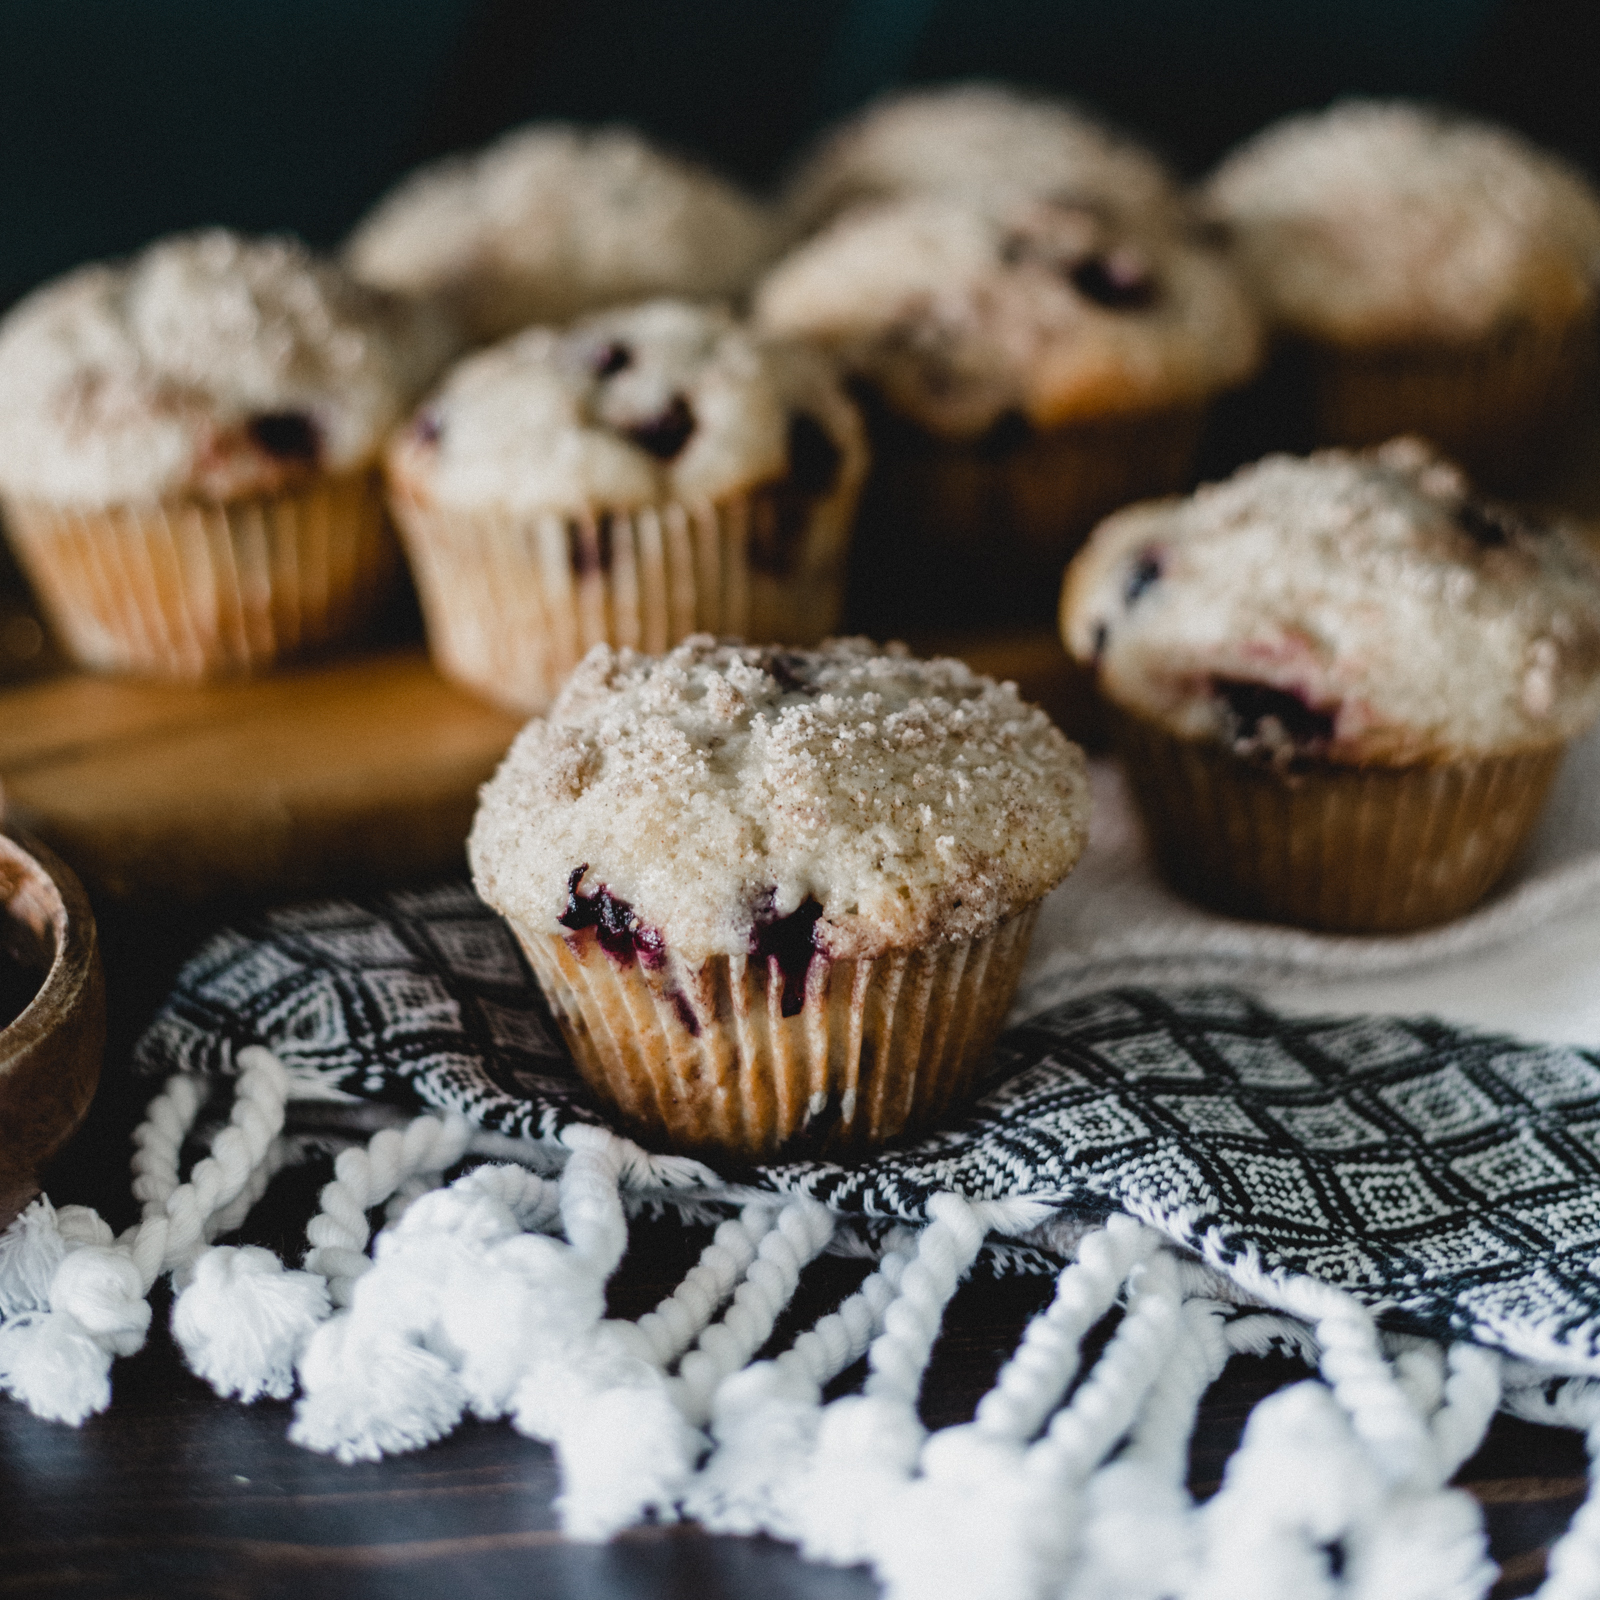 muffins with saskatoon berries